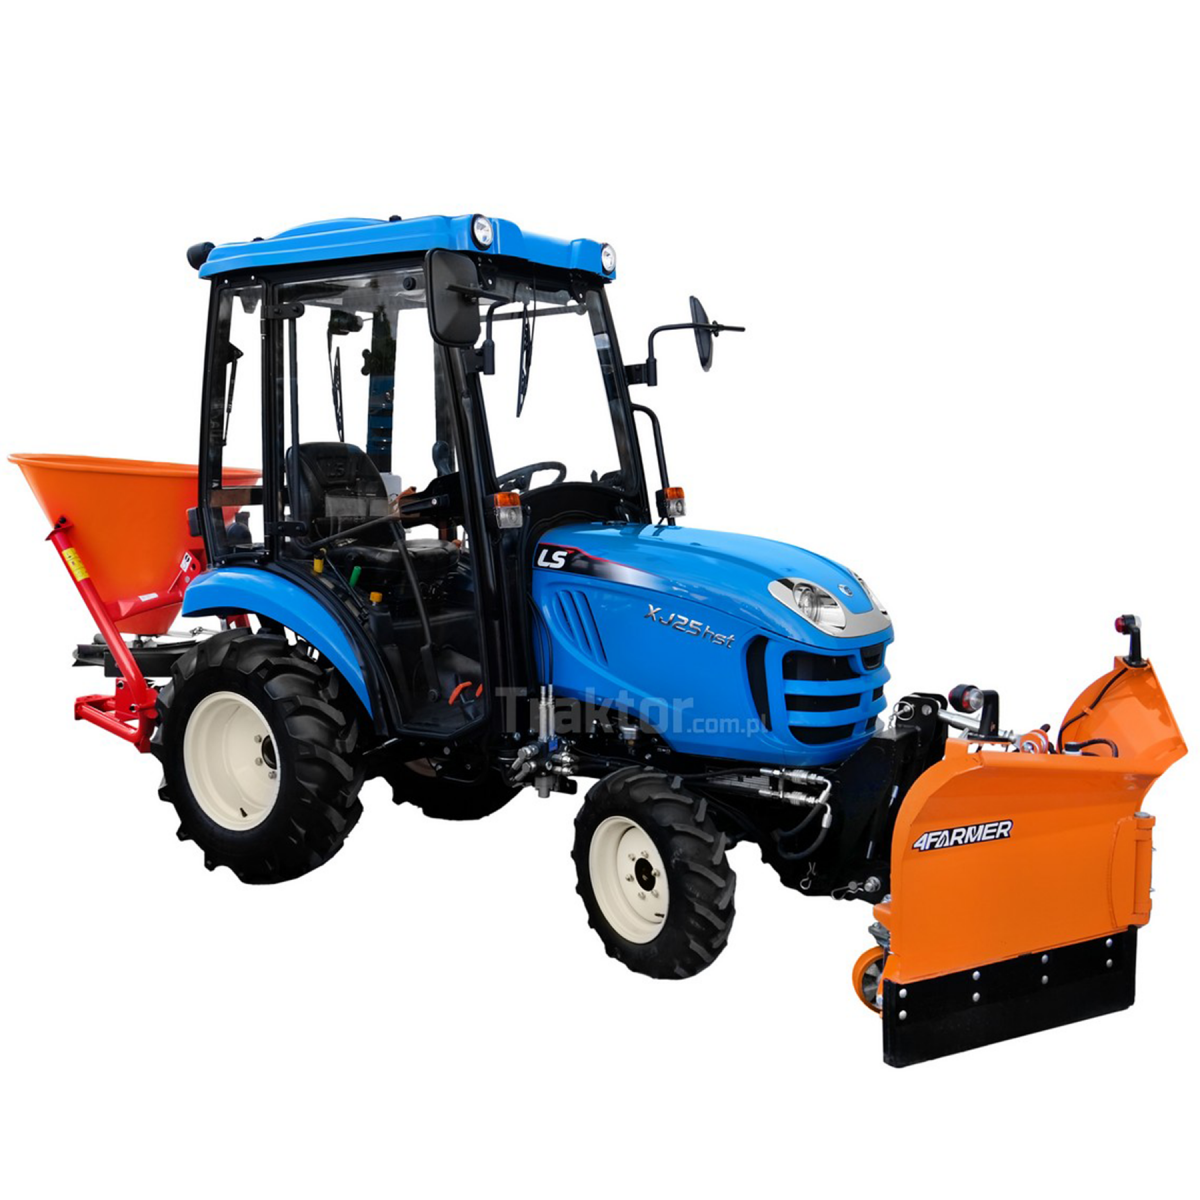 LS Tractor XJ25 HST 4x4 - 24.4 HP / CAB + Vario arrow snow plow 150 cm, hydraulic 4FARMER + 200L Dexwal spreader